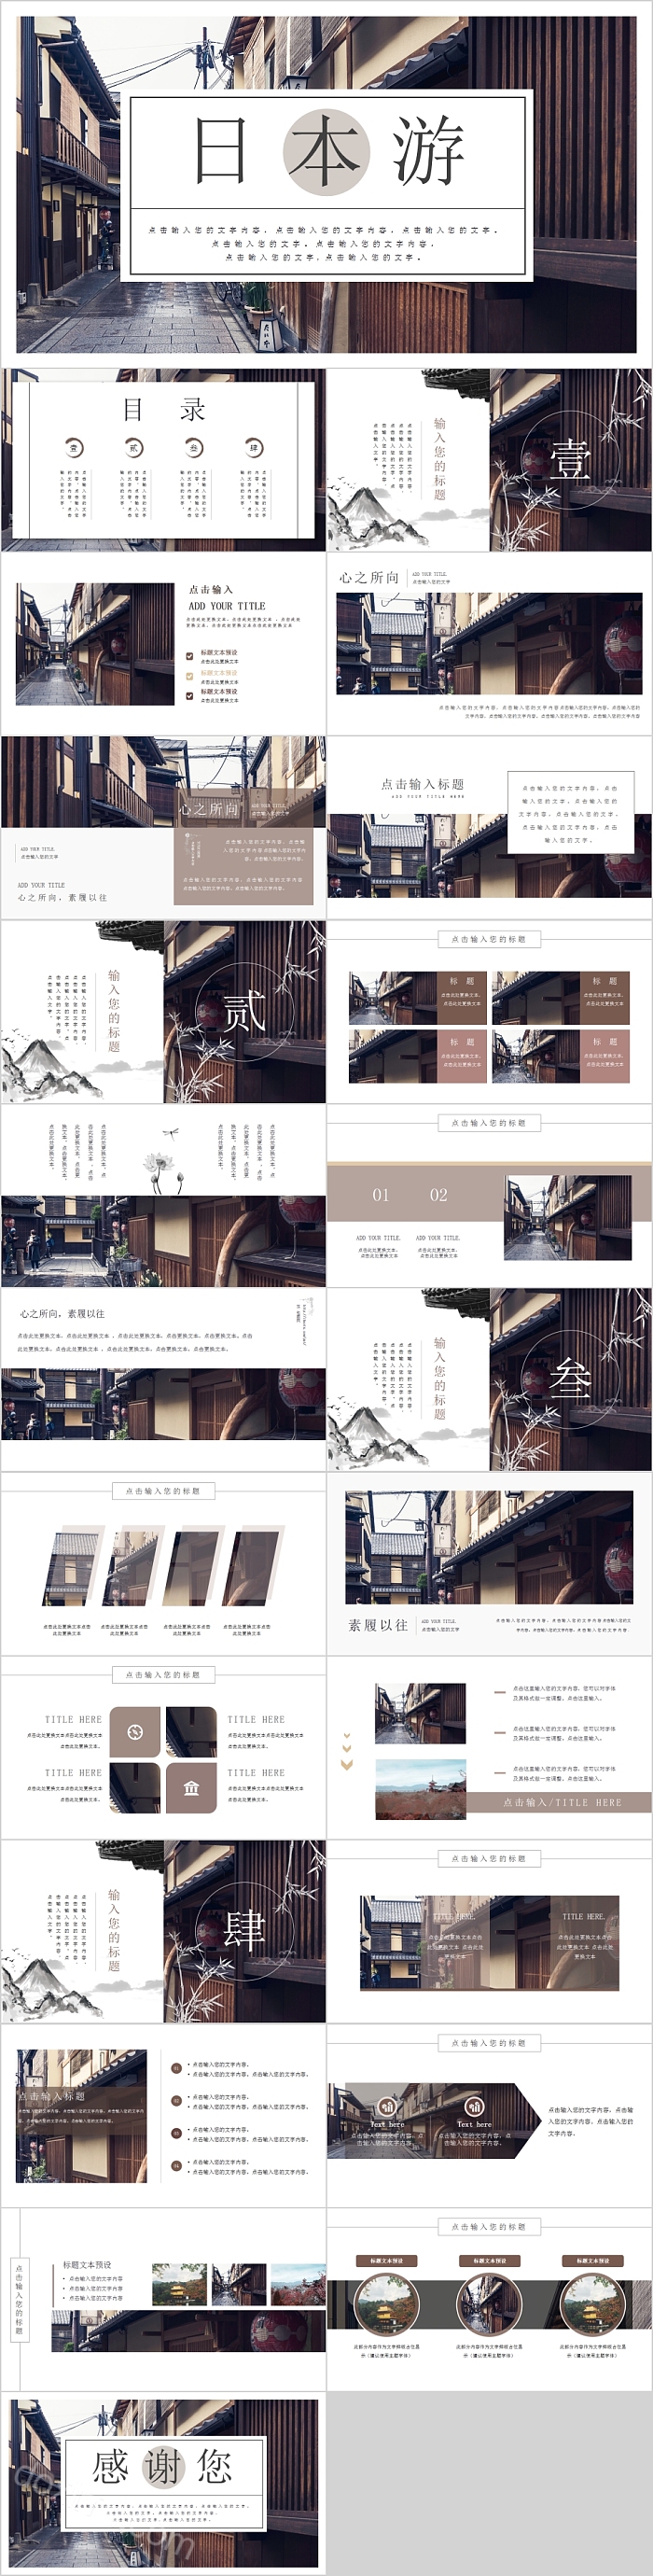 日系风格日本旅游宣传画册PPT模板